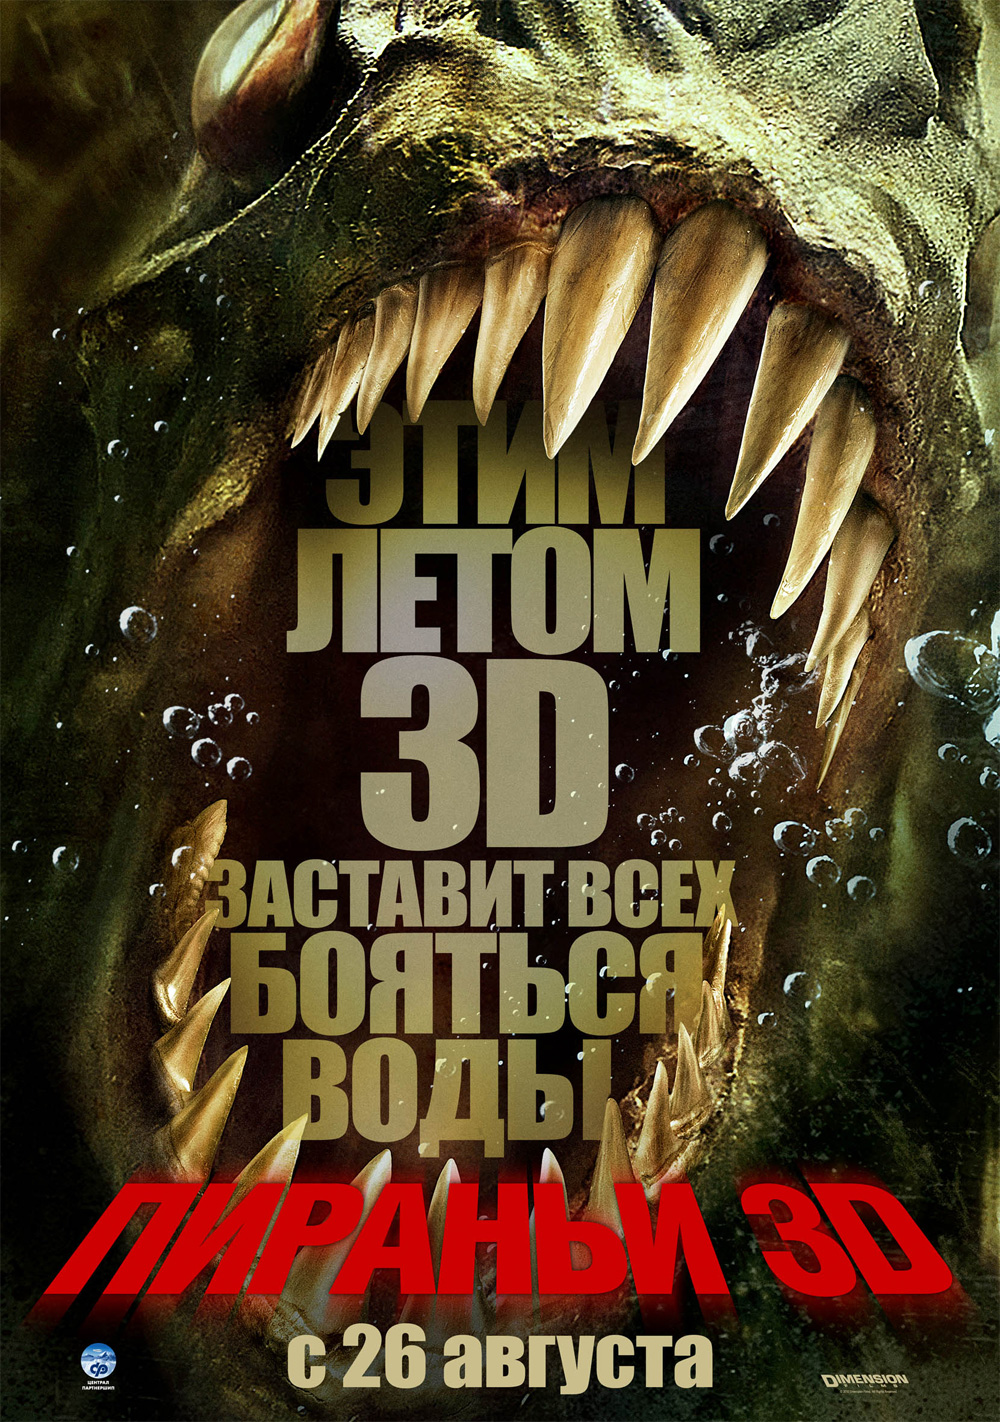 Poster Piranha 3D